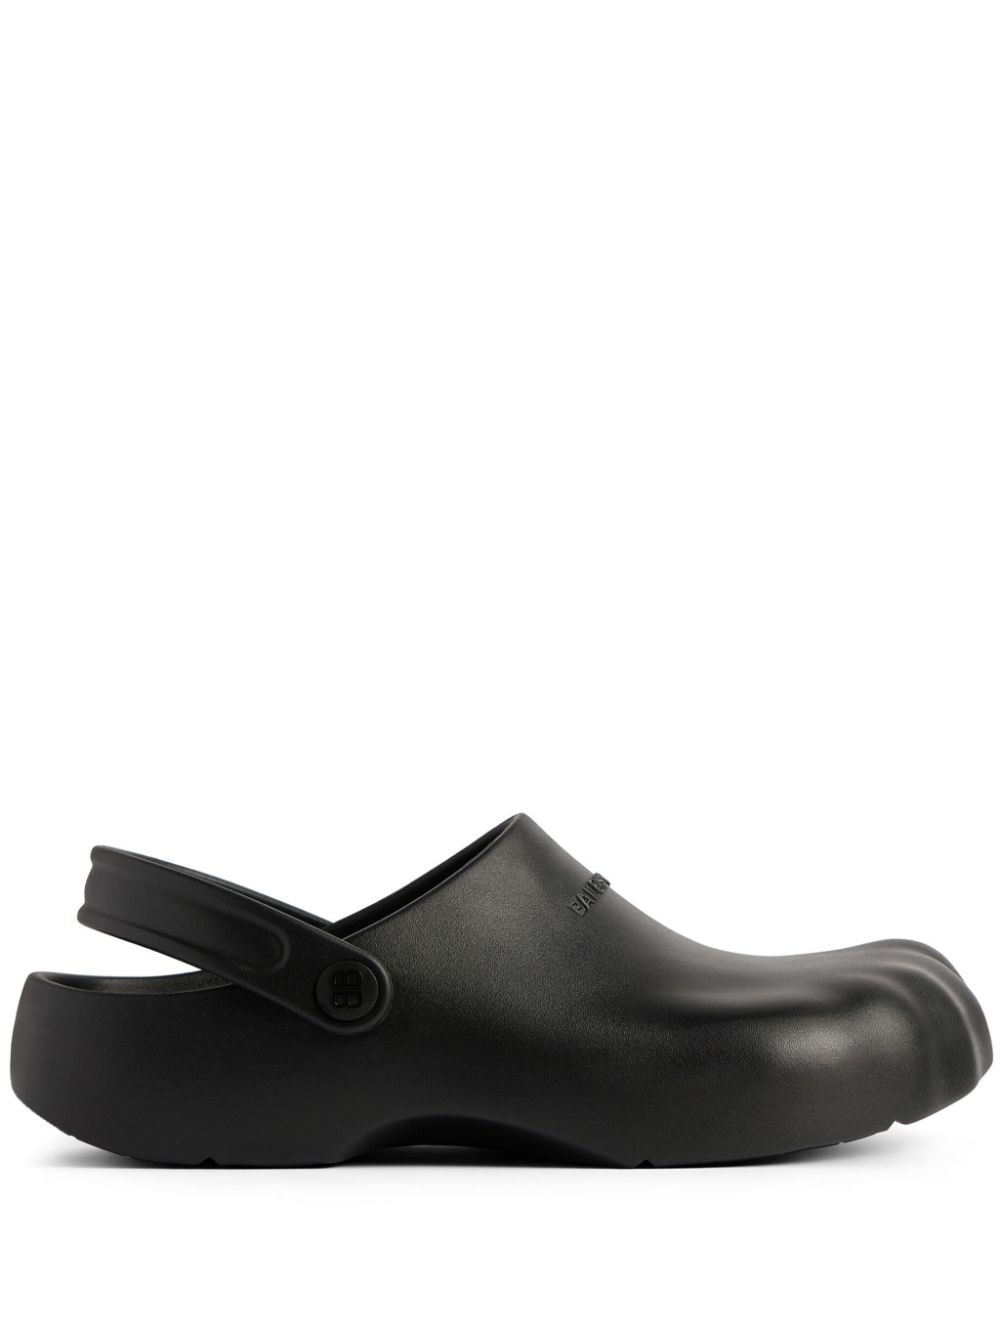 BALENCIAGA Men's Black Square Toe Molded Footbed Sandals